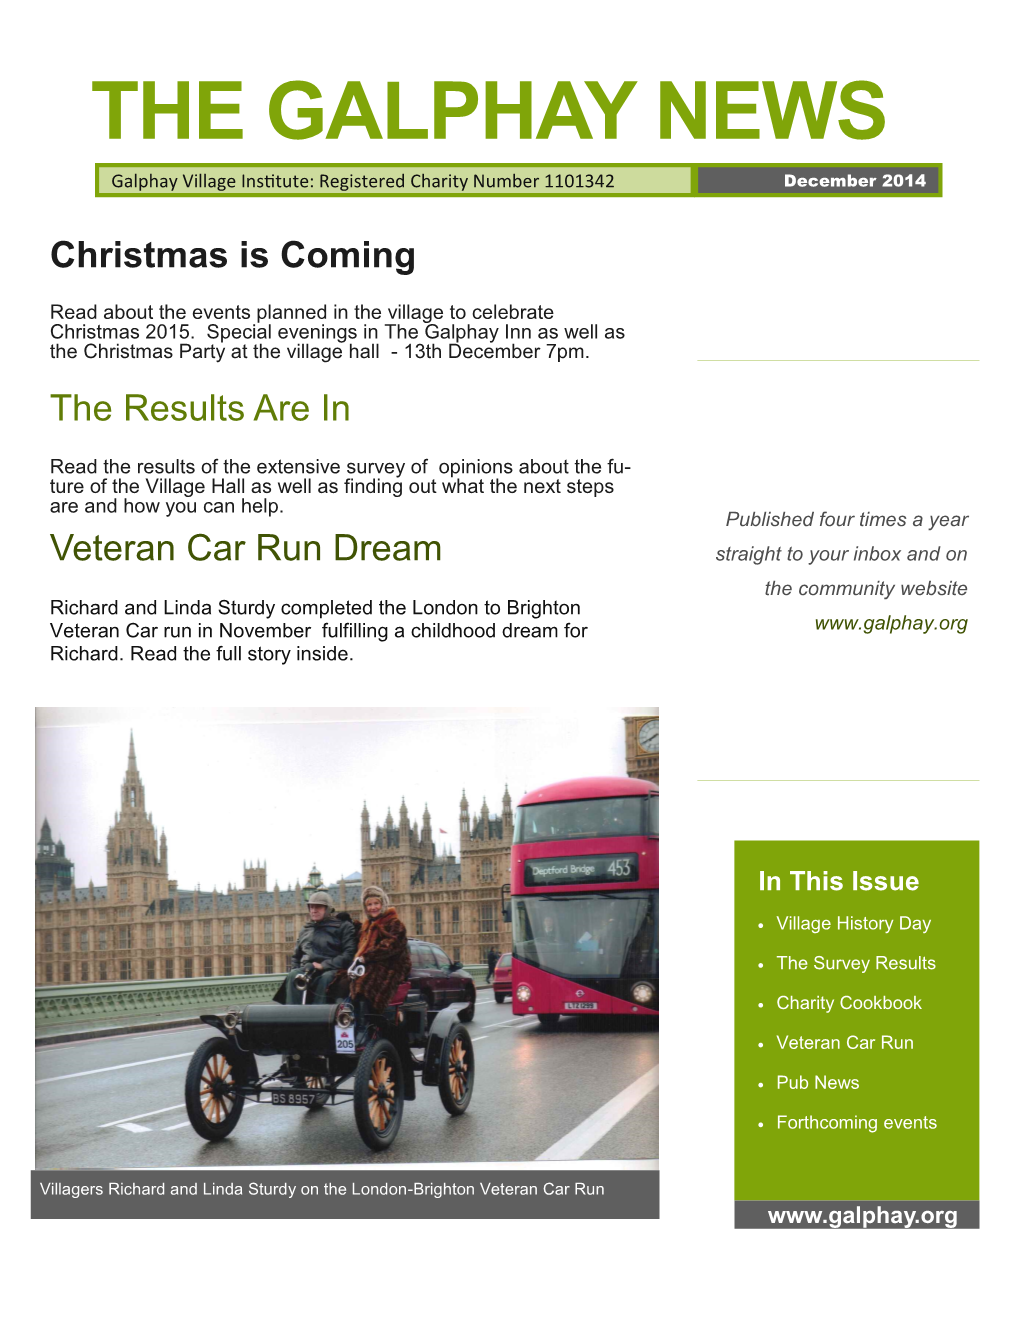 Newsletter December 2014